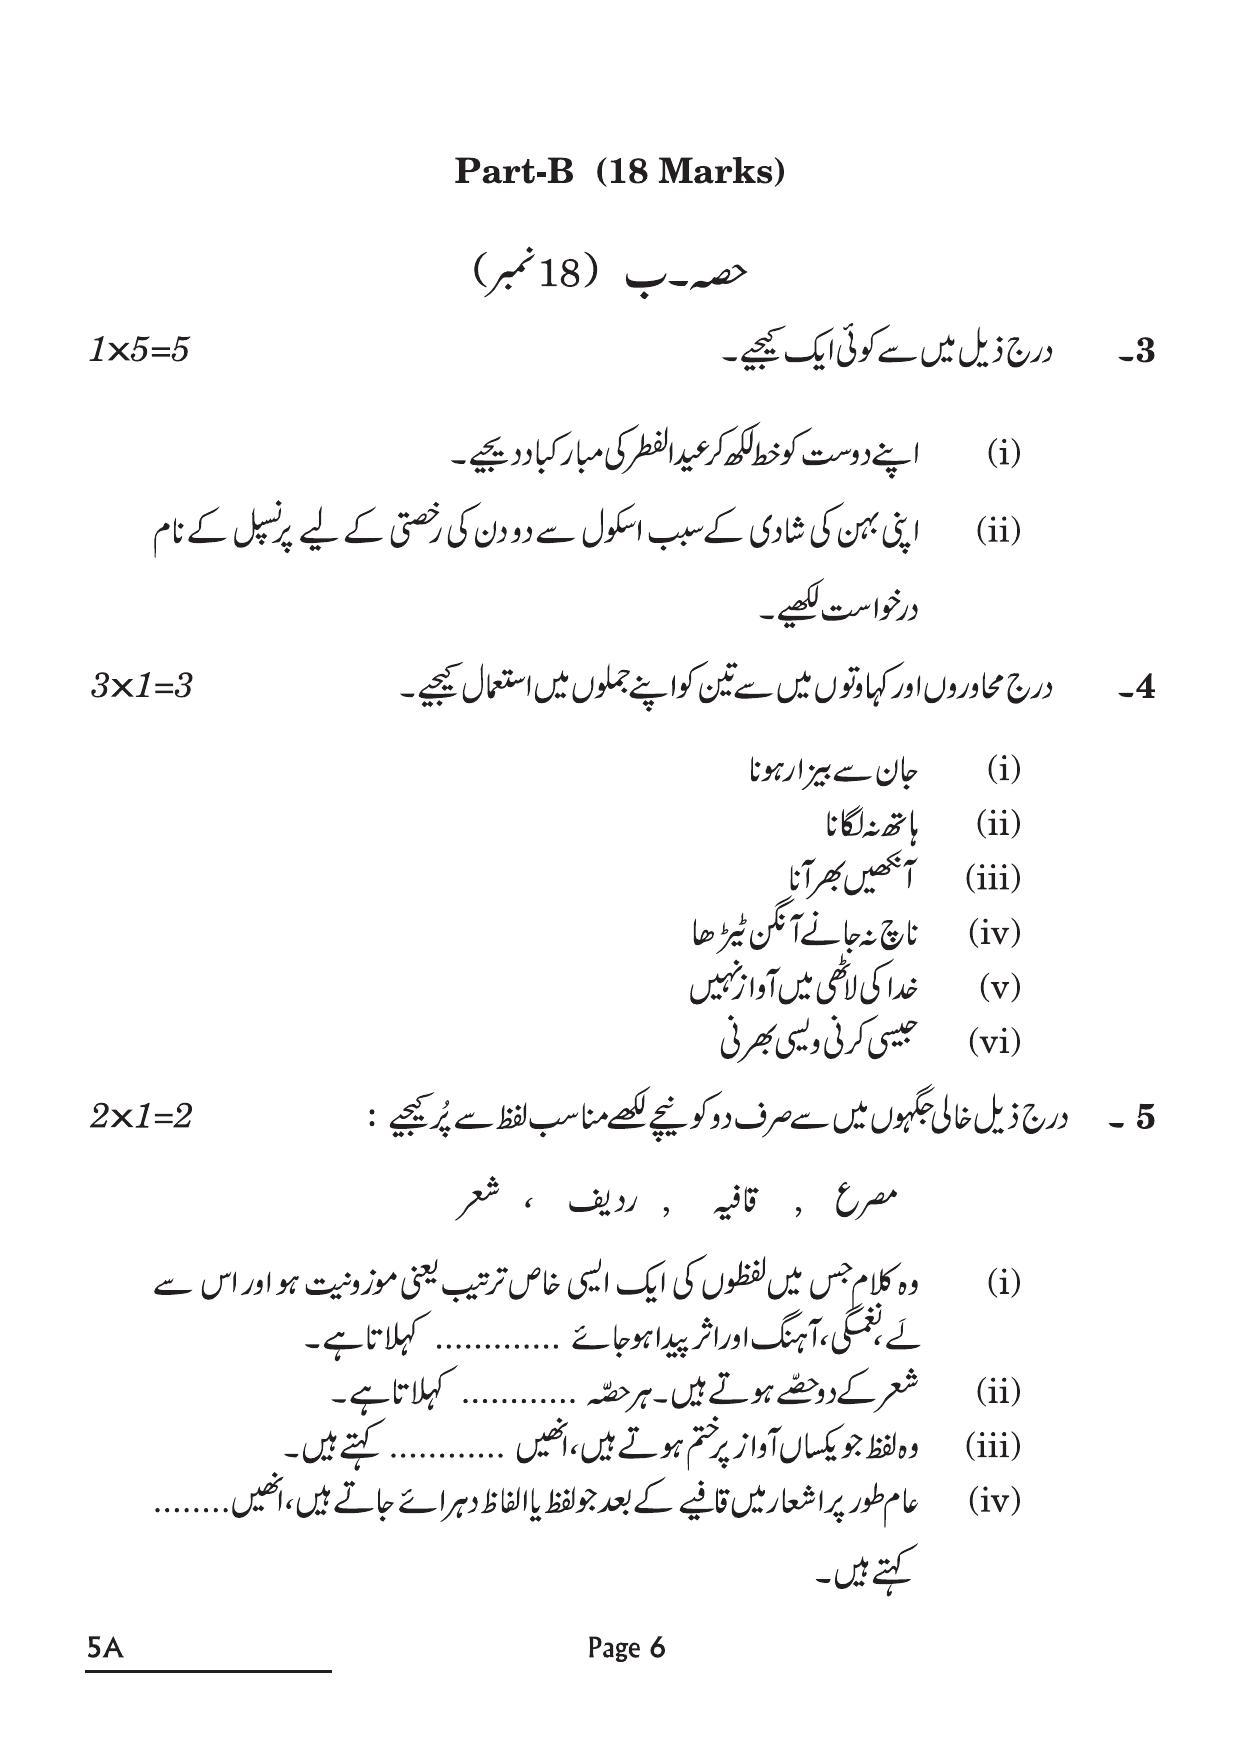 CBSE Class 10 5A Urdu A 2022 Question Paper - Page 6